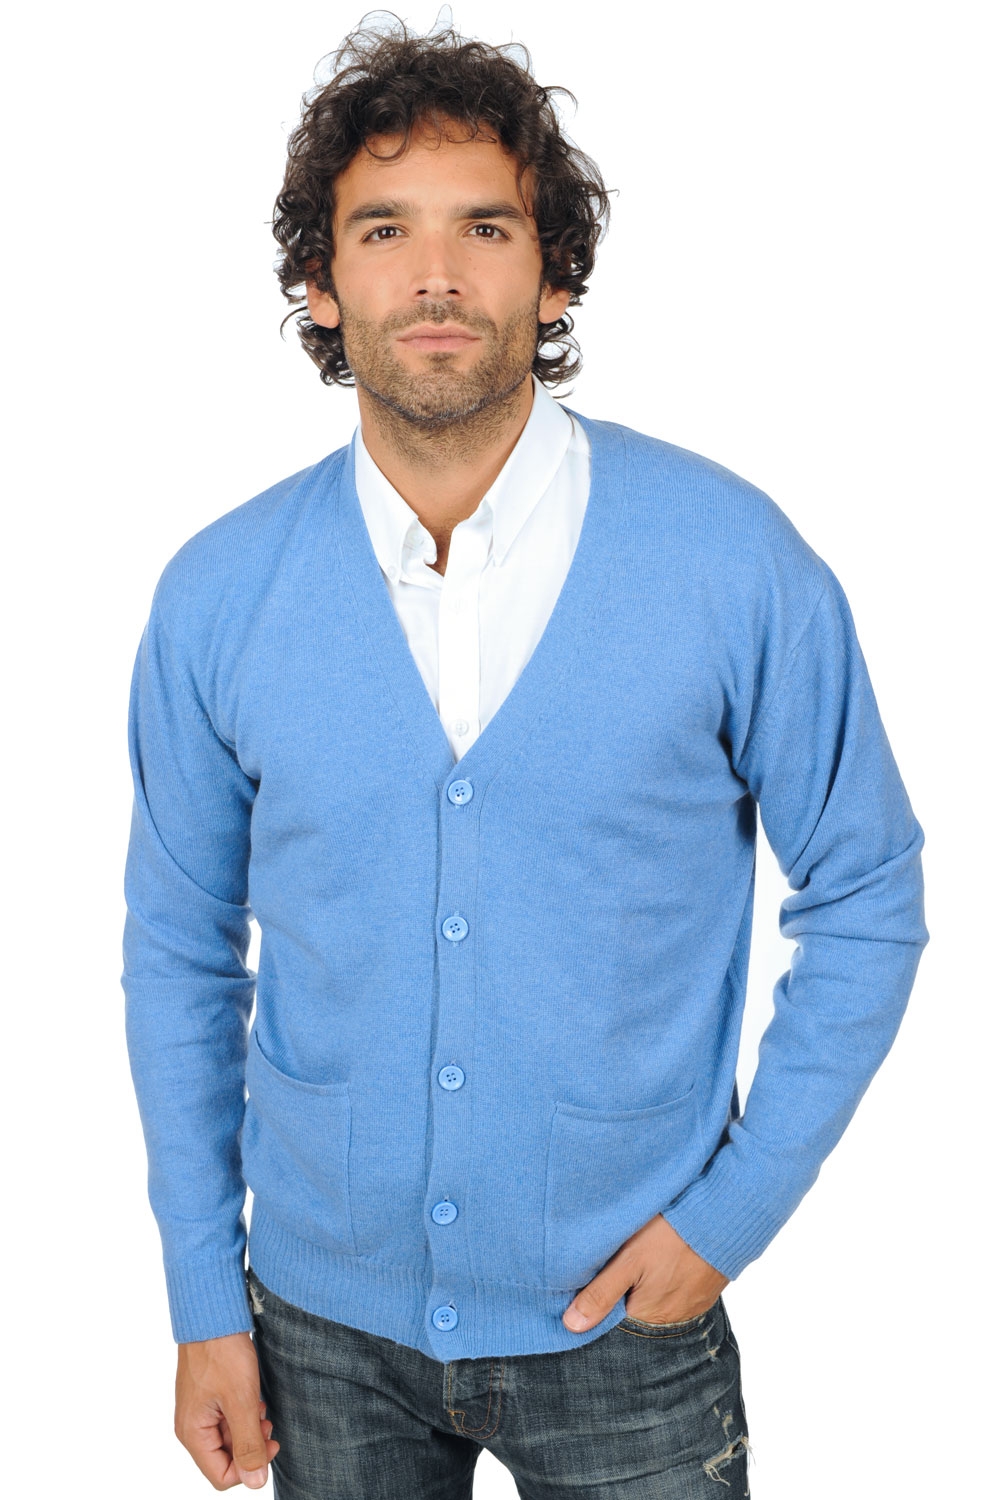 Cashmere men waistcoat sleeveless sweaters yoni blue chine m